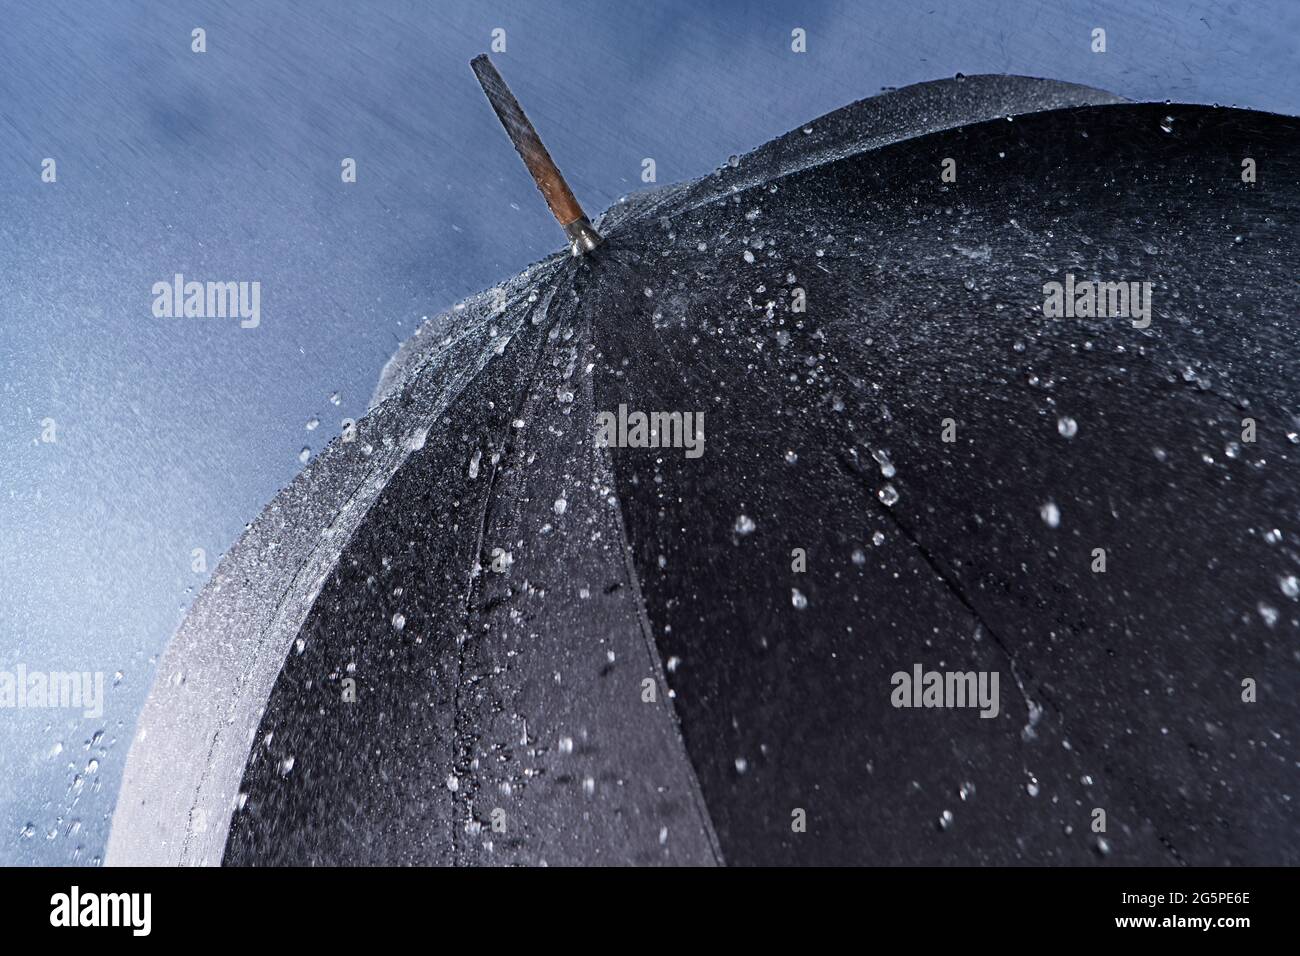 Schwarzer klassischer Regenschirm bei starkem Regen mit Wasser, das von der Regenschirmoberfläche abprallt. Stockfoto